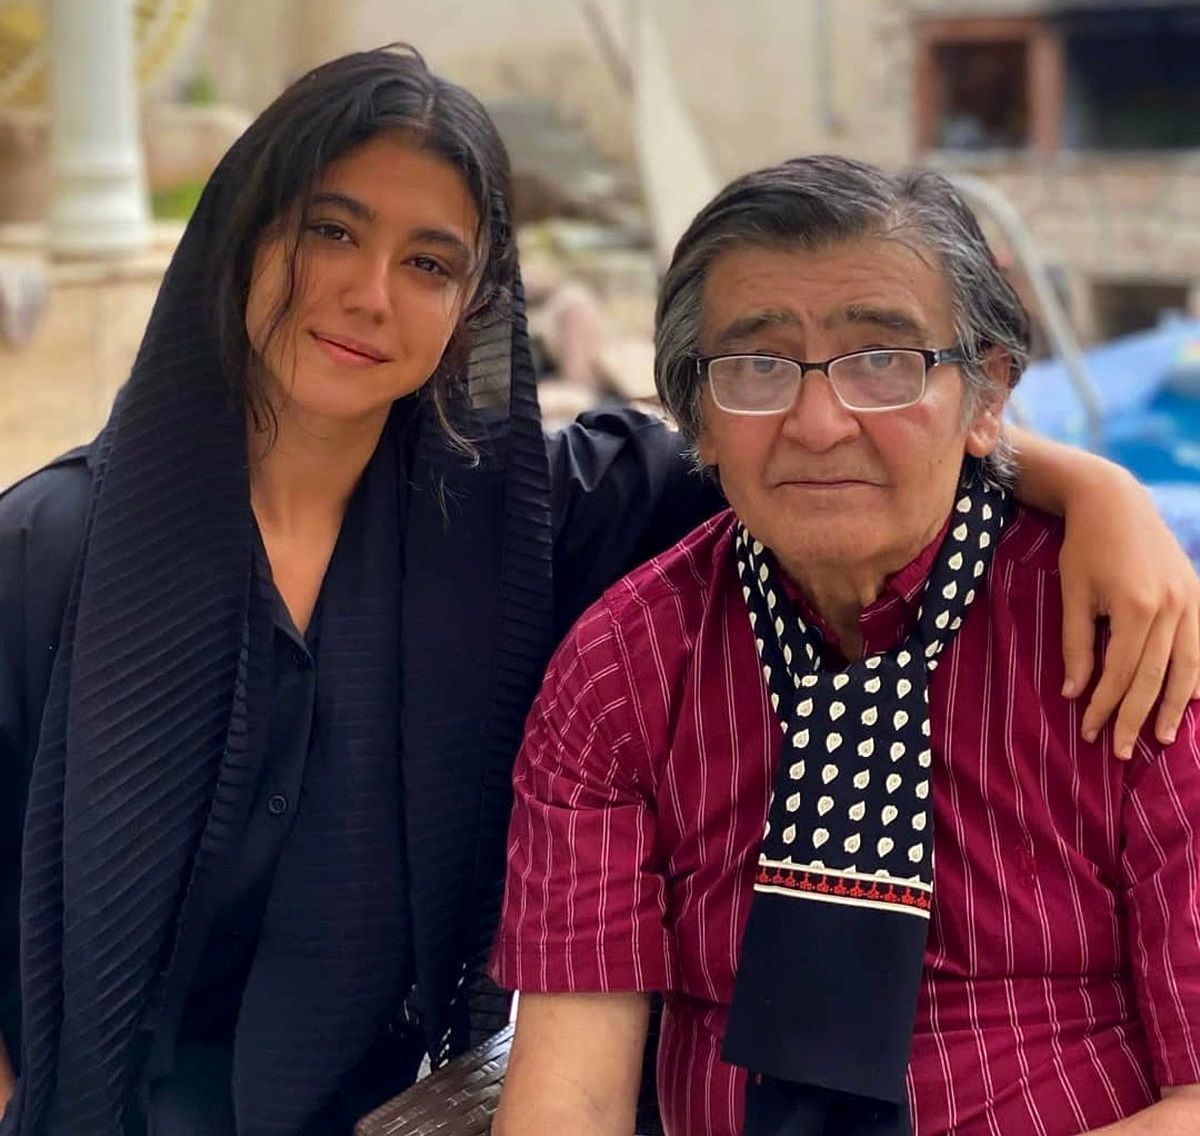 همسر رضا رویگری او را تنها در آسایشگاه سالمندان رها کرد | ویدیو دردناک از رضا رویگری